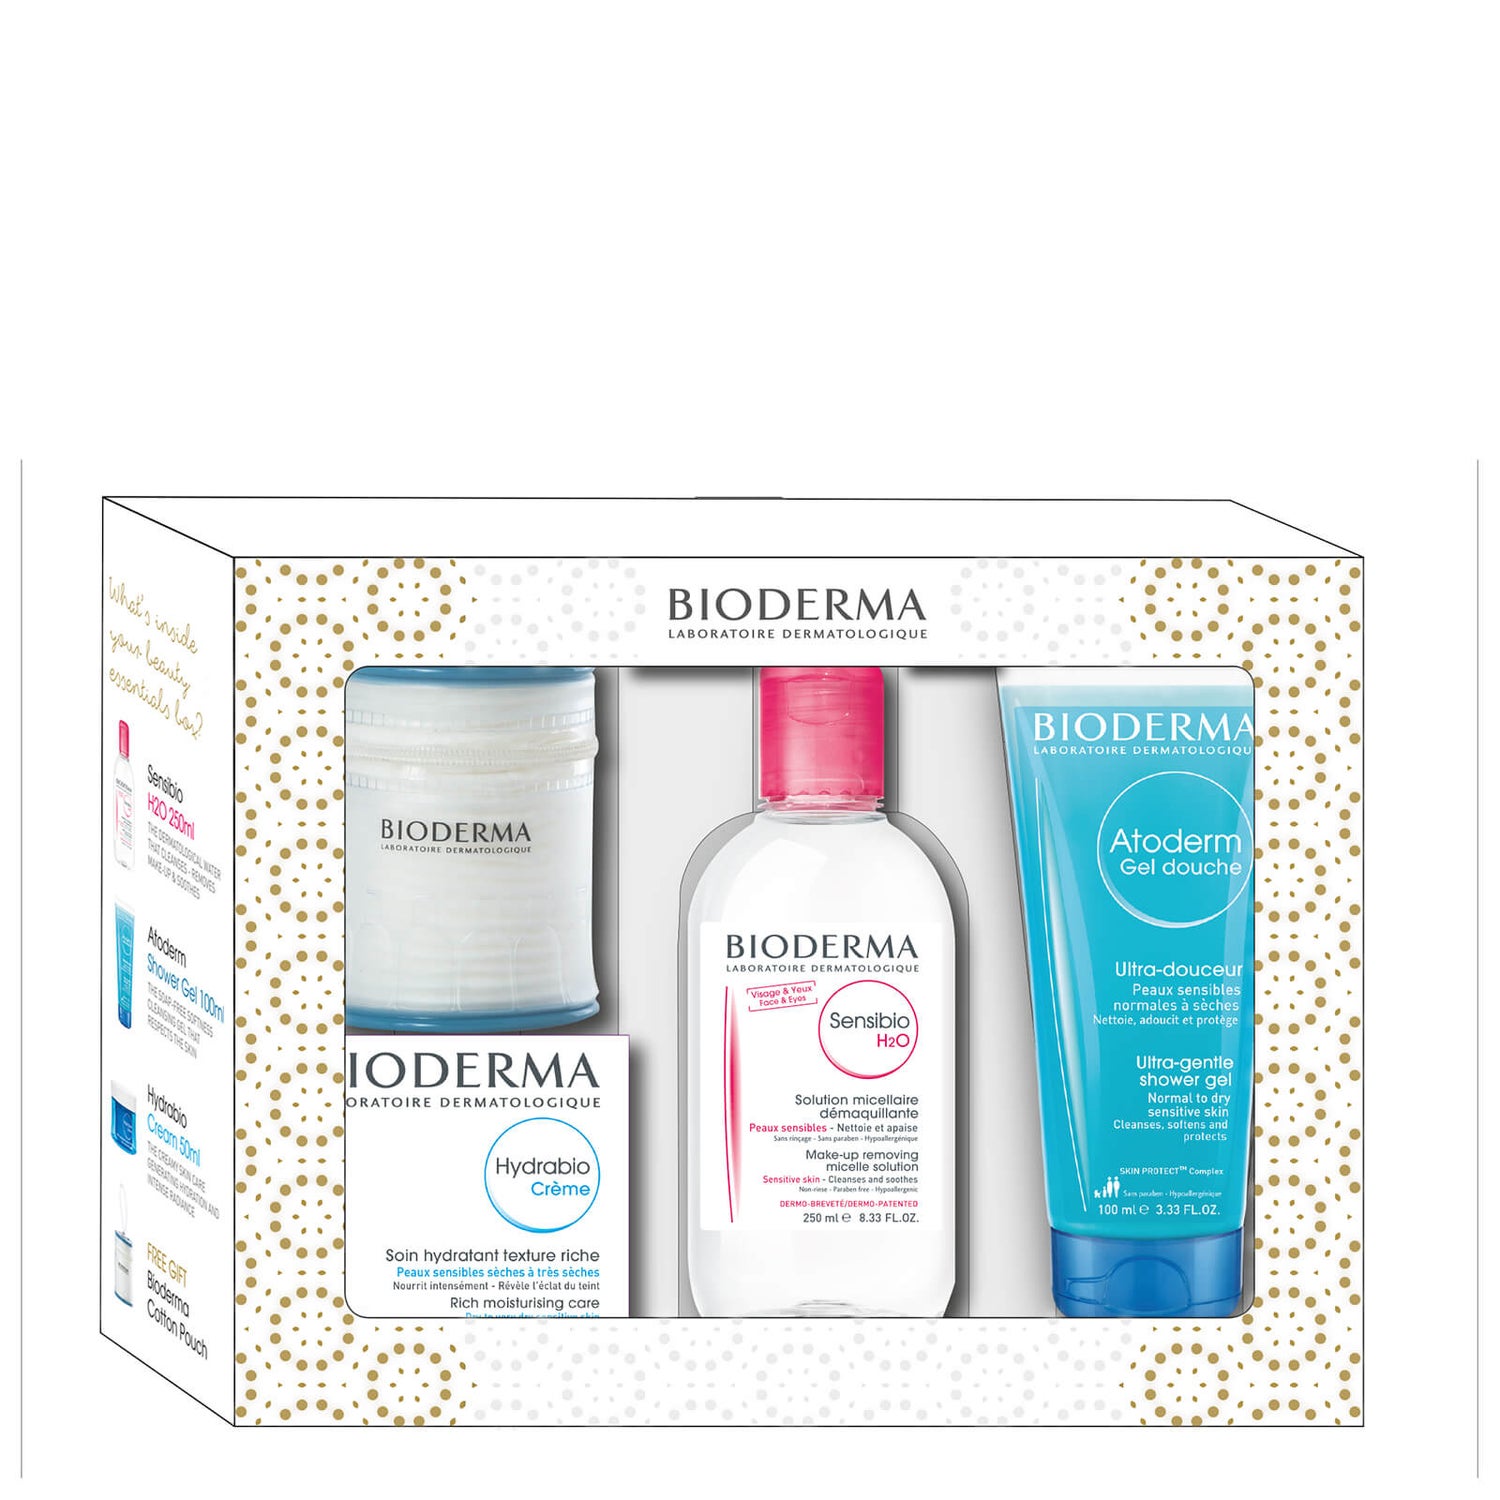 Bioderma Beauty Essentials (Worth £34.10)